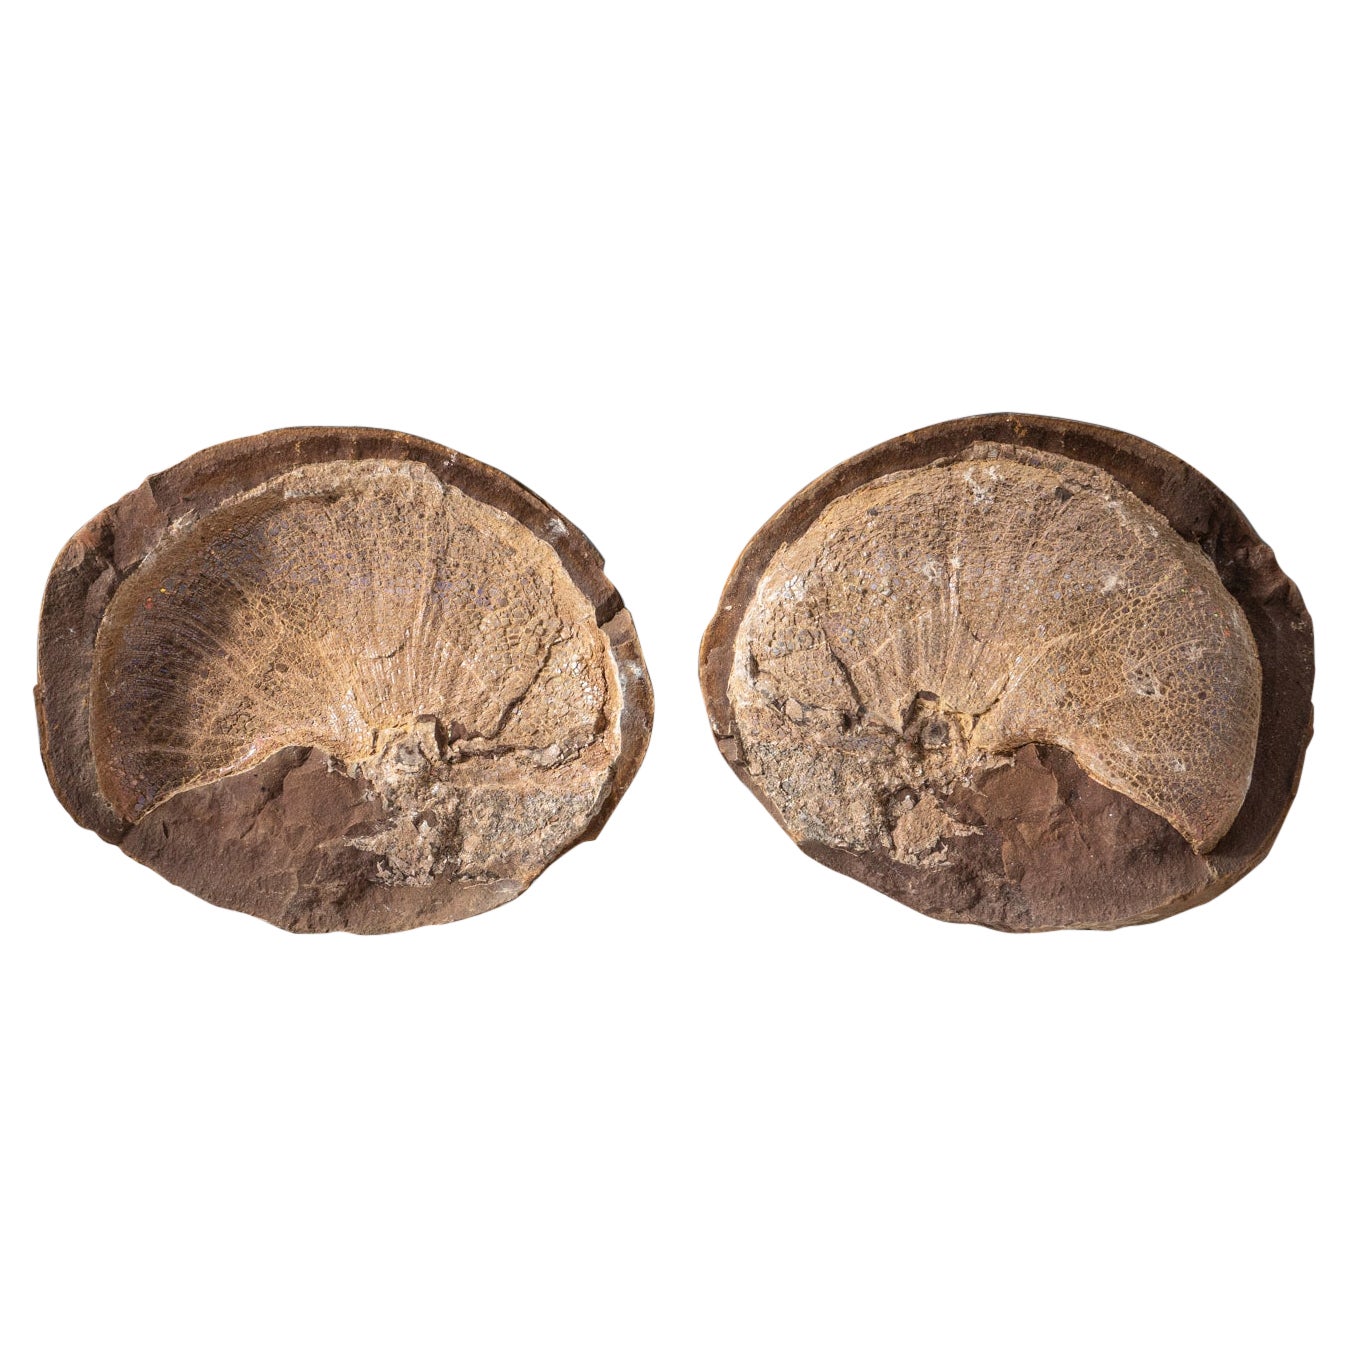 Véritable fossile d'ammonite opalisée dans une matrice (positif/négatif) avec support en acrylique